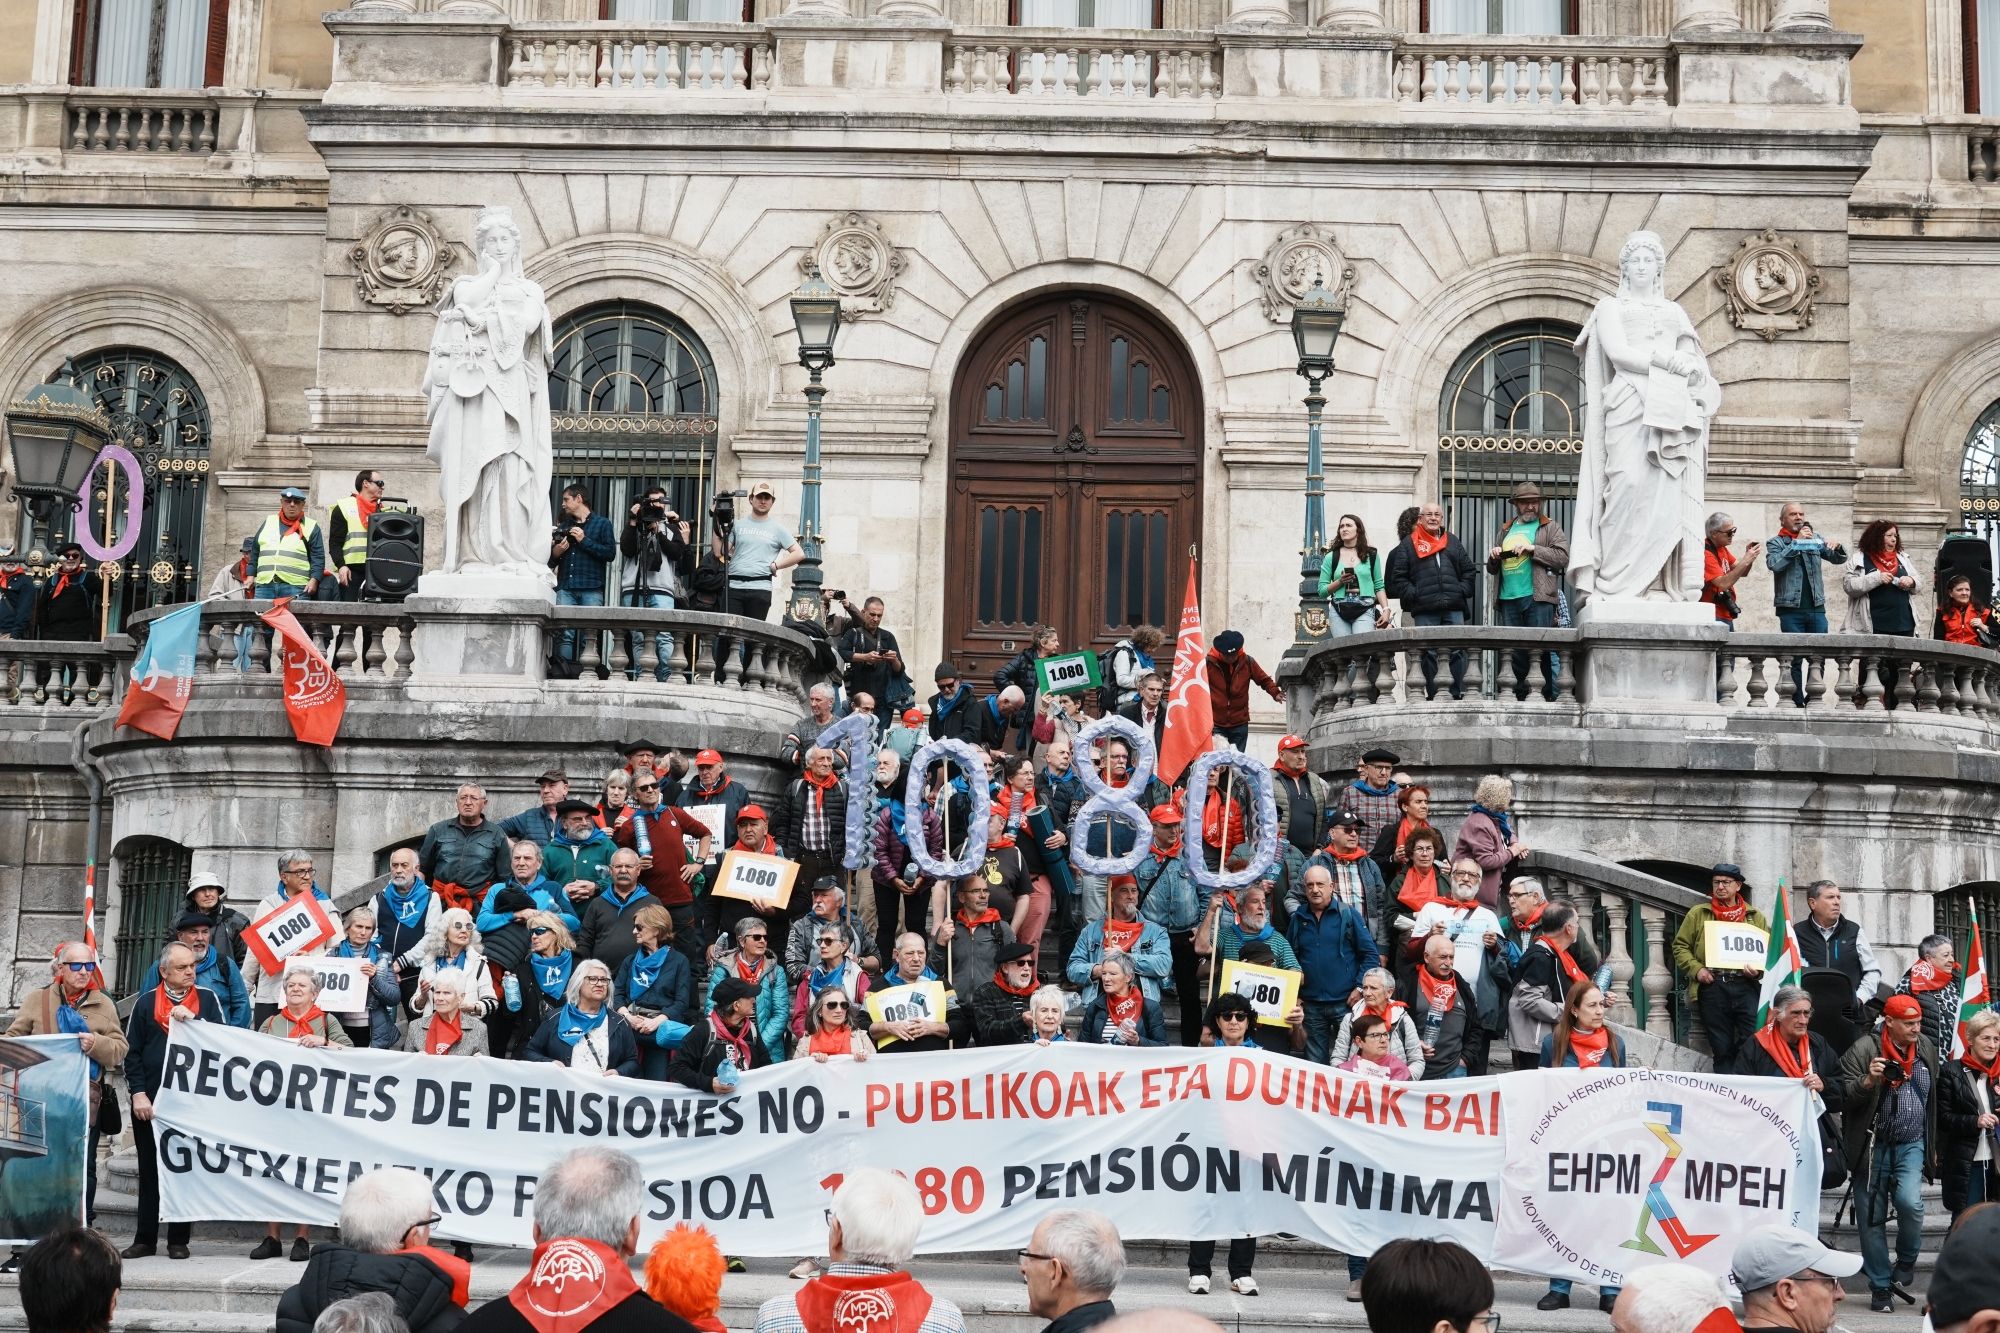 Los pensionistas vuelven a la calle: se manifestarán en agosto y octubre "gobierne quien gobierne"